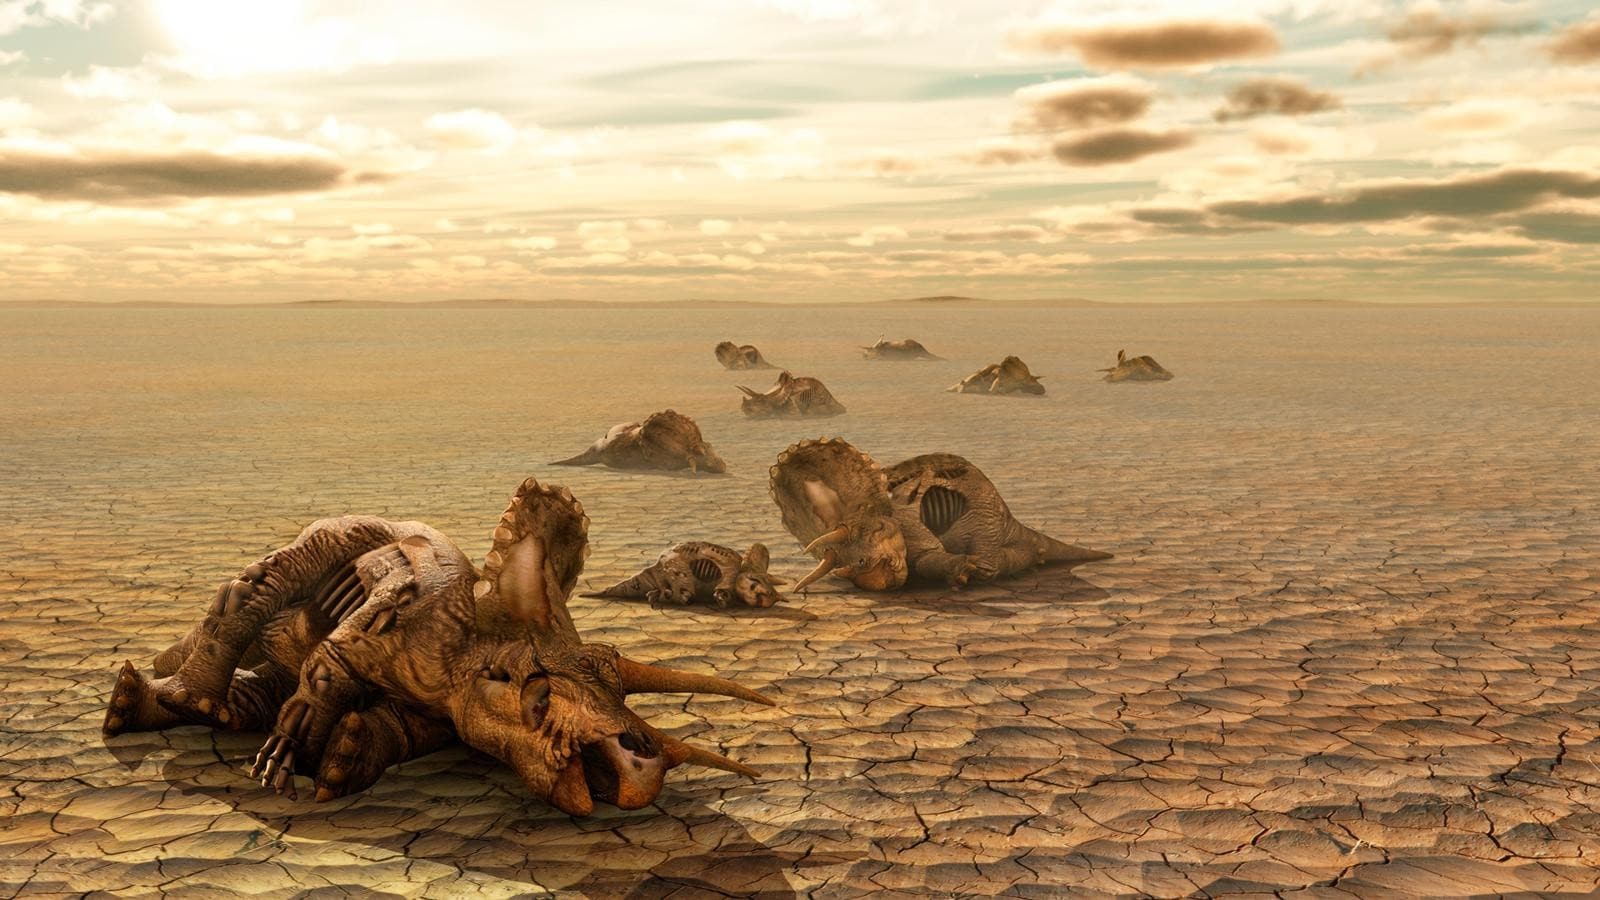 Все живы: как палеонтологи могут получать ложные картины массовых вымираний